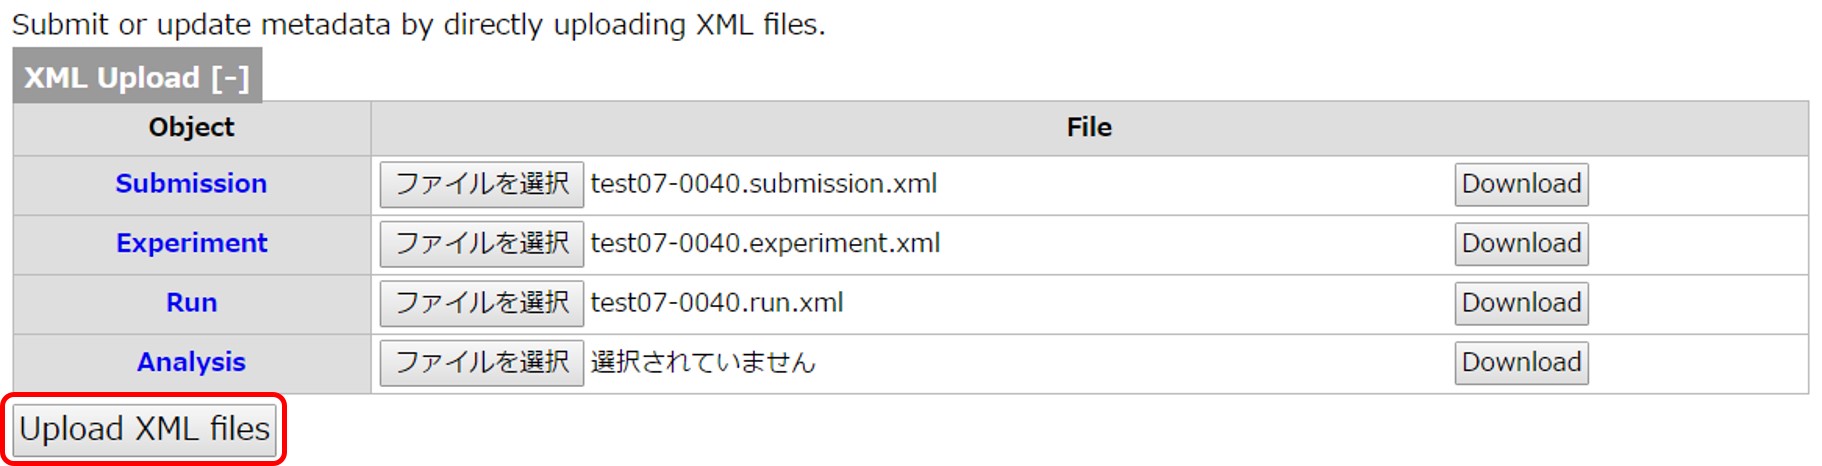 Upload metadata XMLs